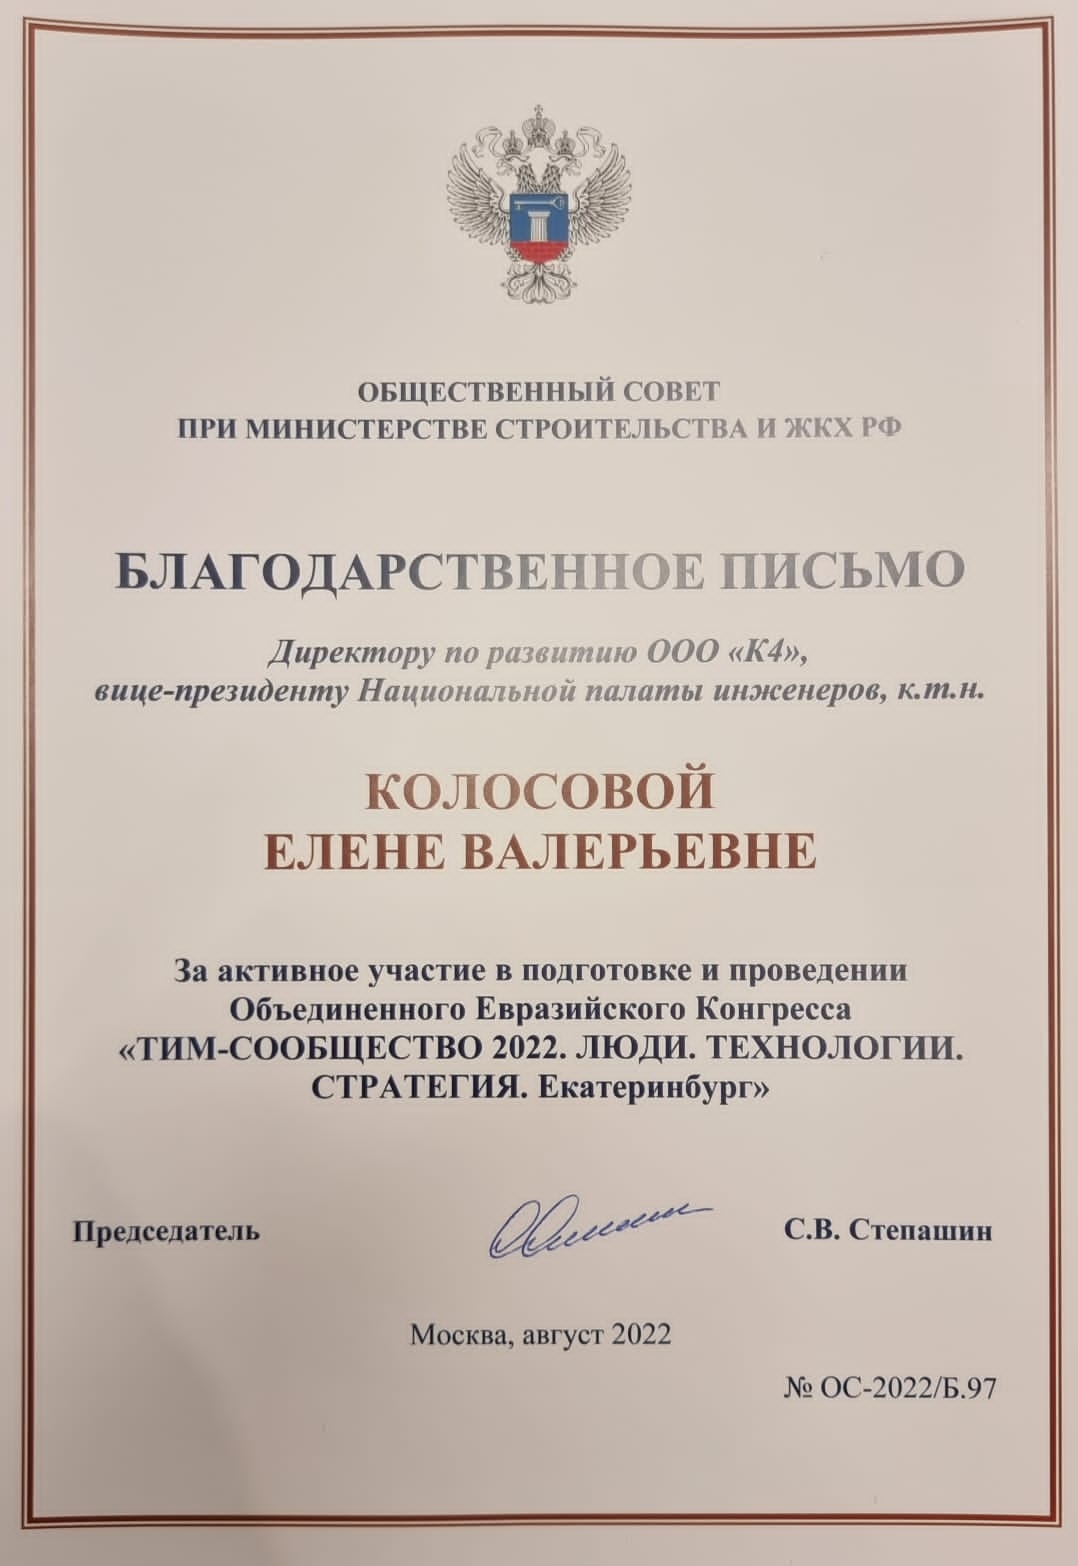 Благодарственное письмо от Общественного совета при Министерстве строительства и ЖКХ России